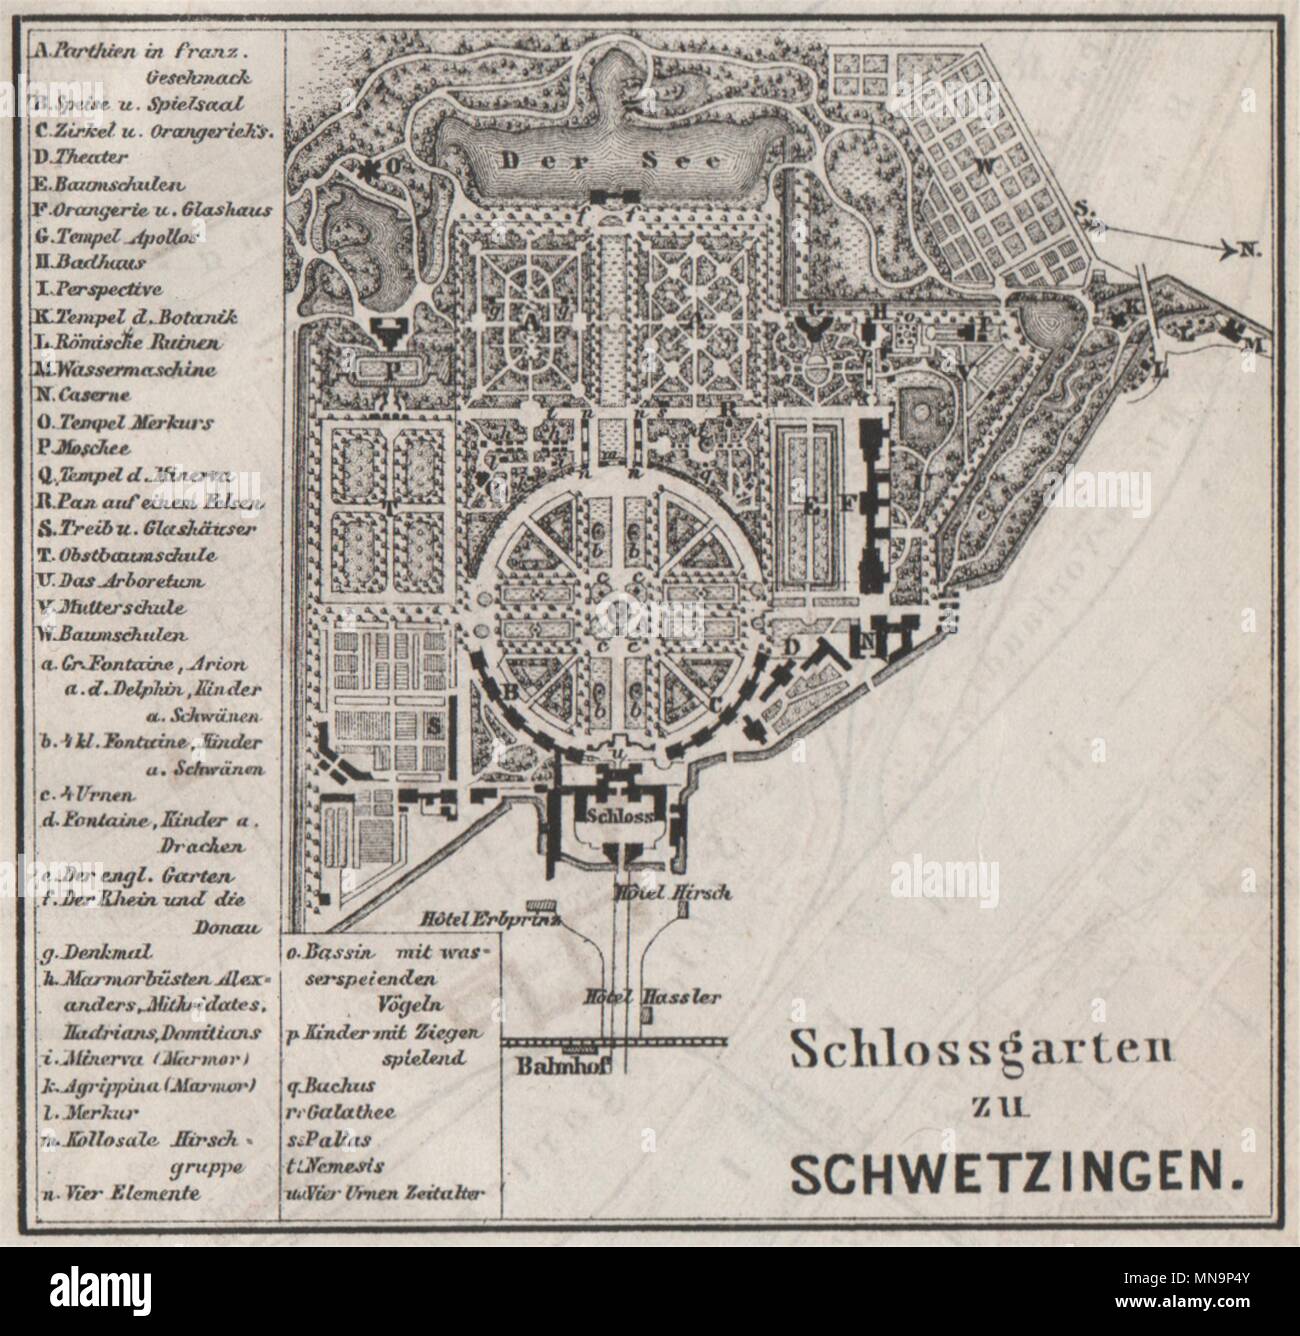 SCHLOSSGARTEN SCHWETZINGEN Palace ground plan. Baden-Württemberg. SMALL 1889 map Stock Photo